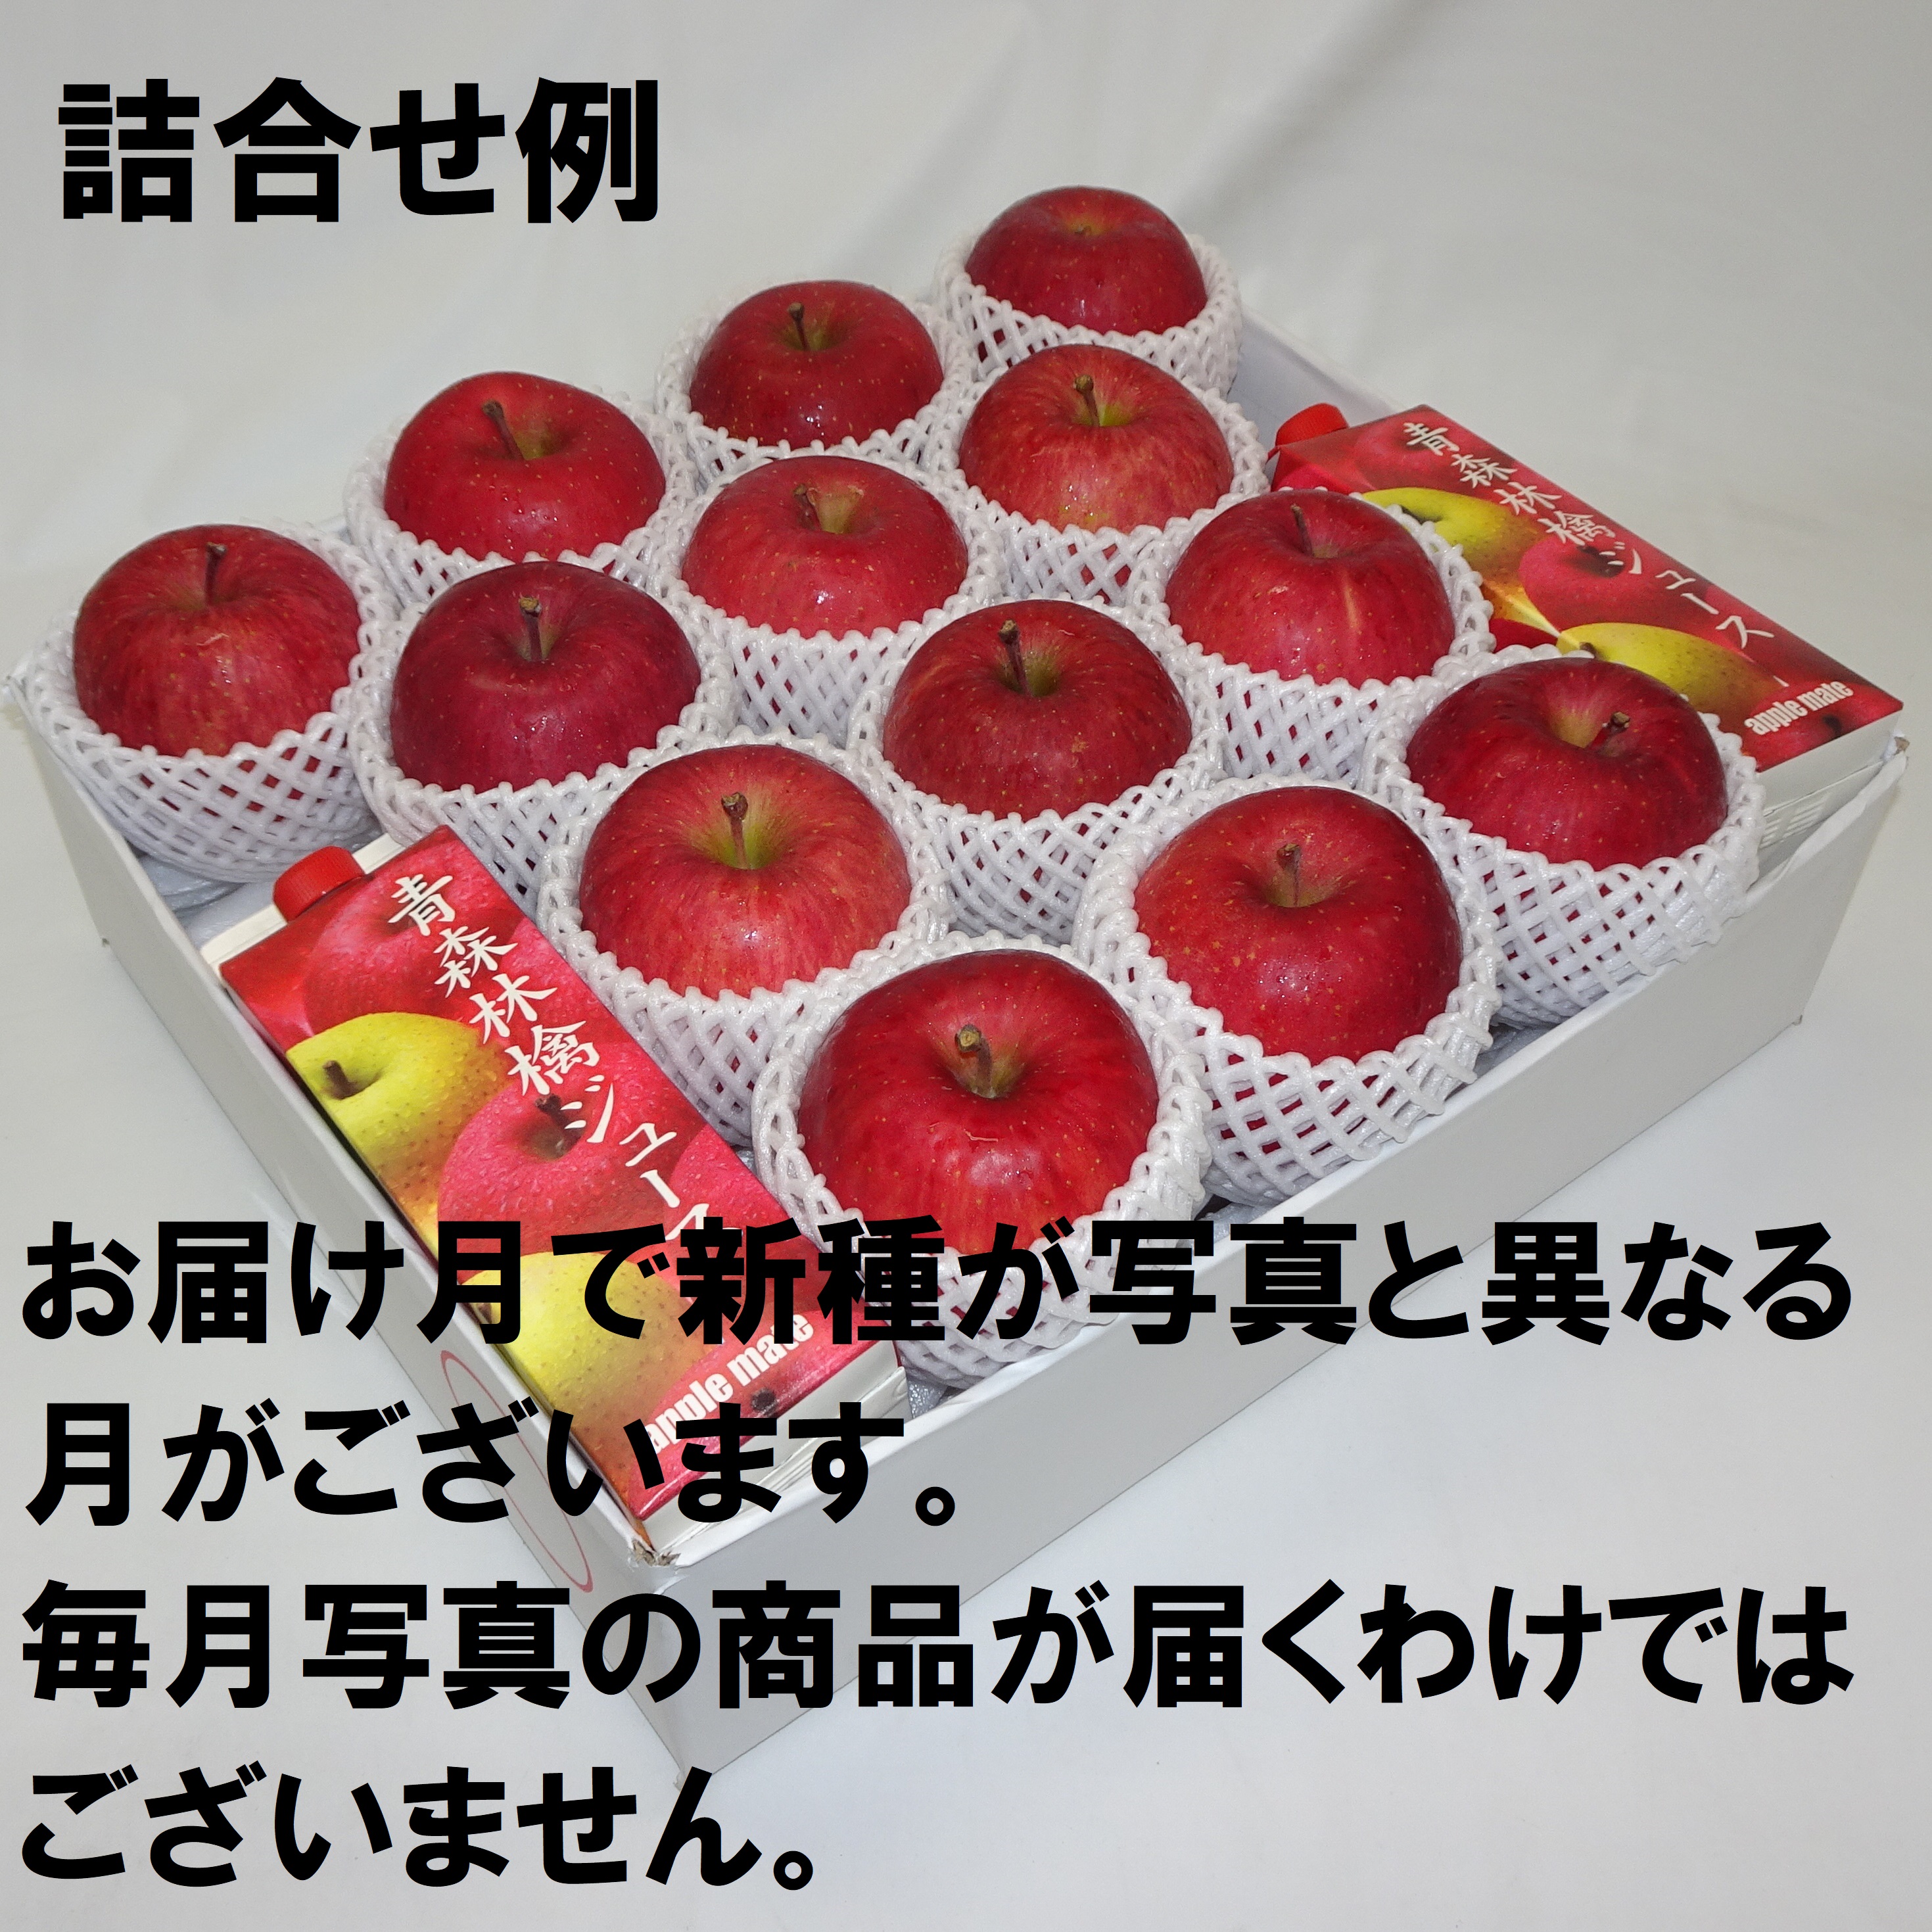 赤いりんごシリーズ 贈答用 Mセット 11ヶ月コース 11M